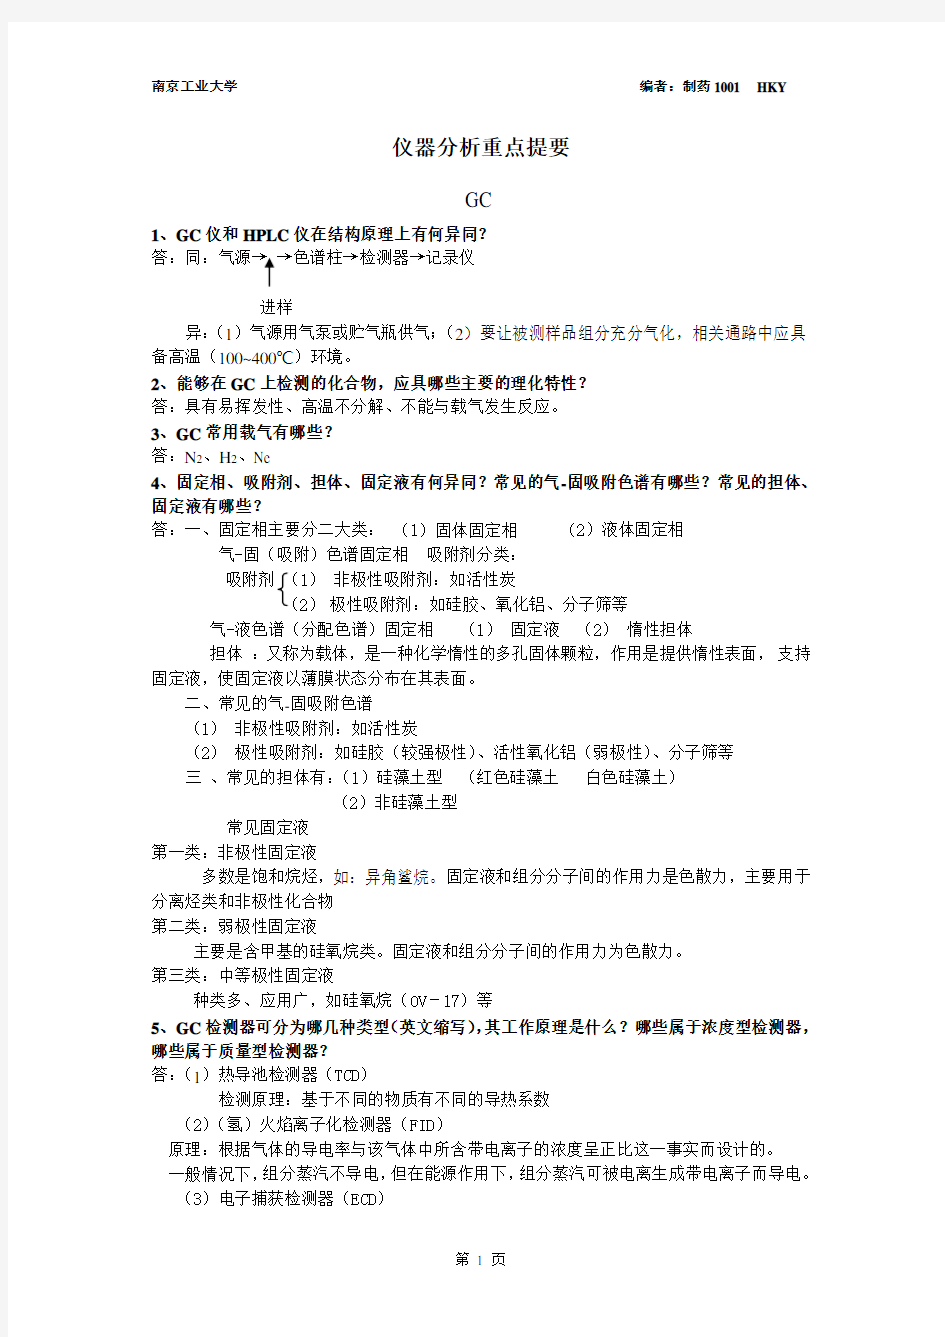 仪器分析复习重点南京工业大学生物与制药工程学院.doc